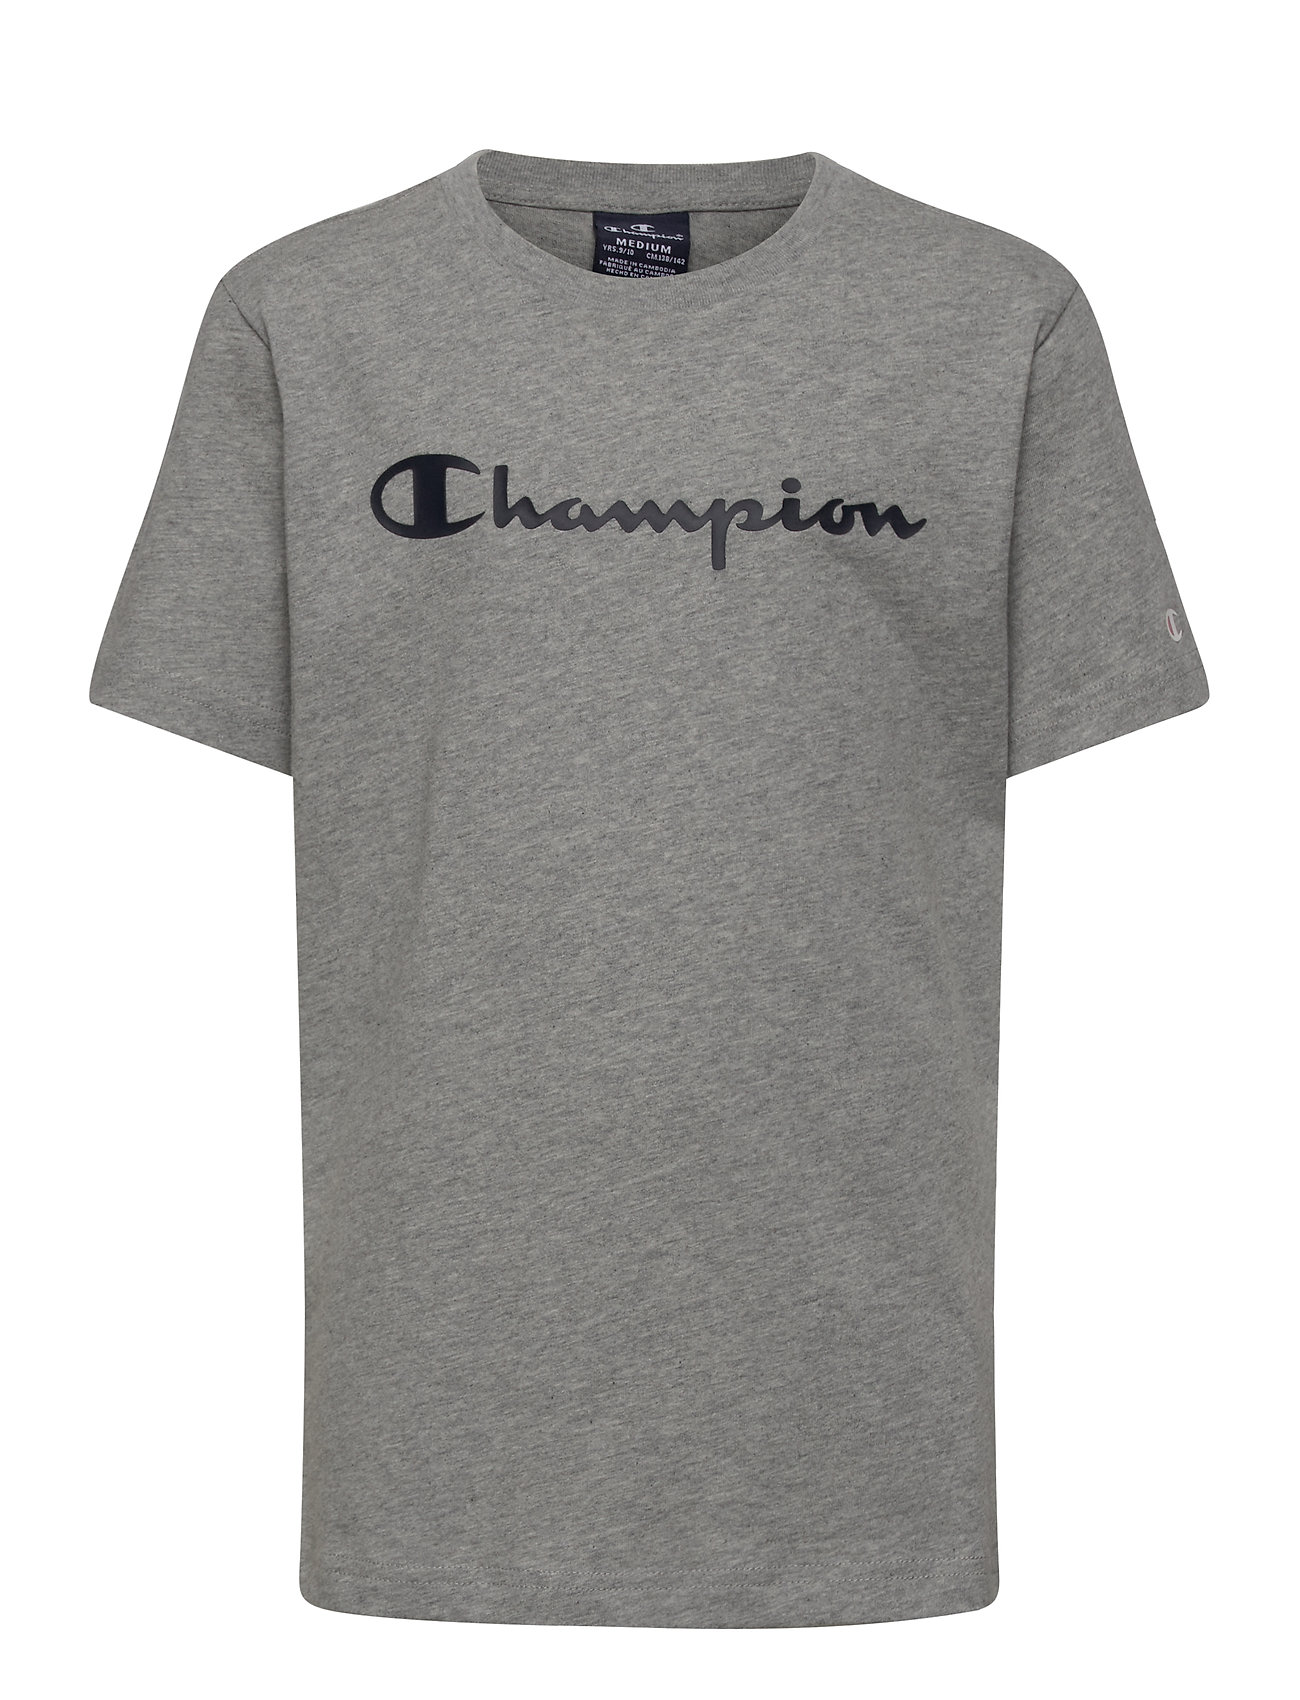 Styre mount Aktiver Crewneck T-Shirt T-shirt Grå Champion t-shirts fra Champion til børn i Sort  - Pashion.dk